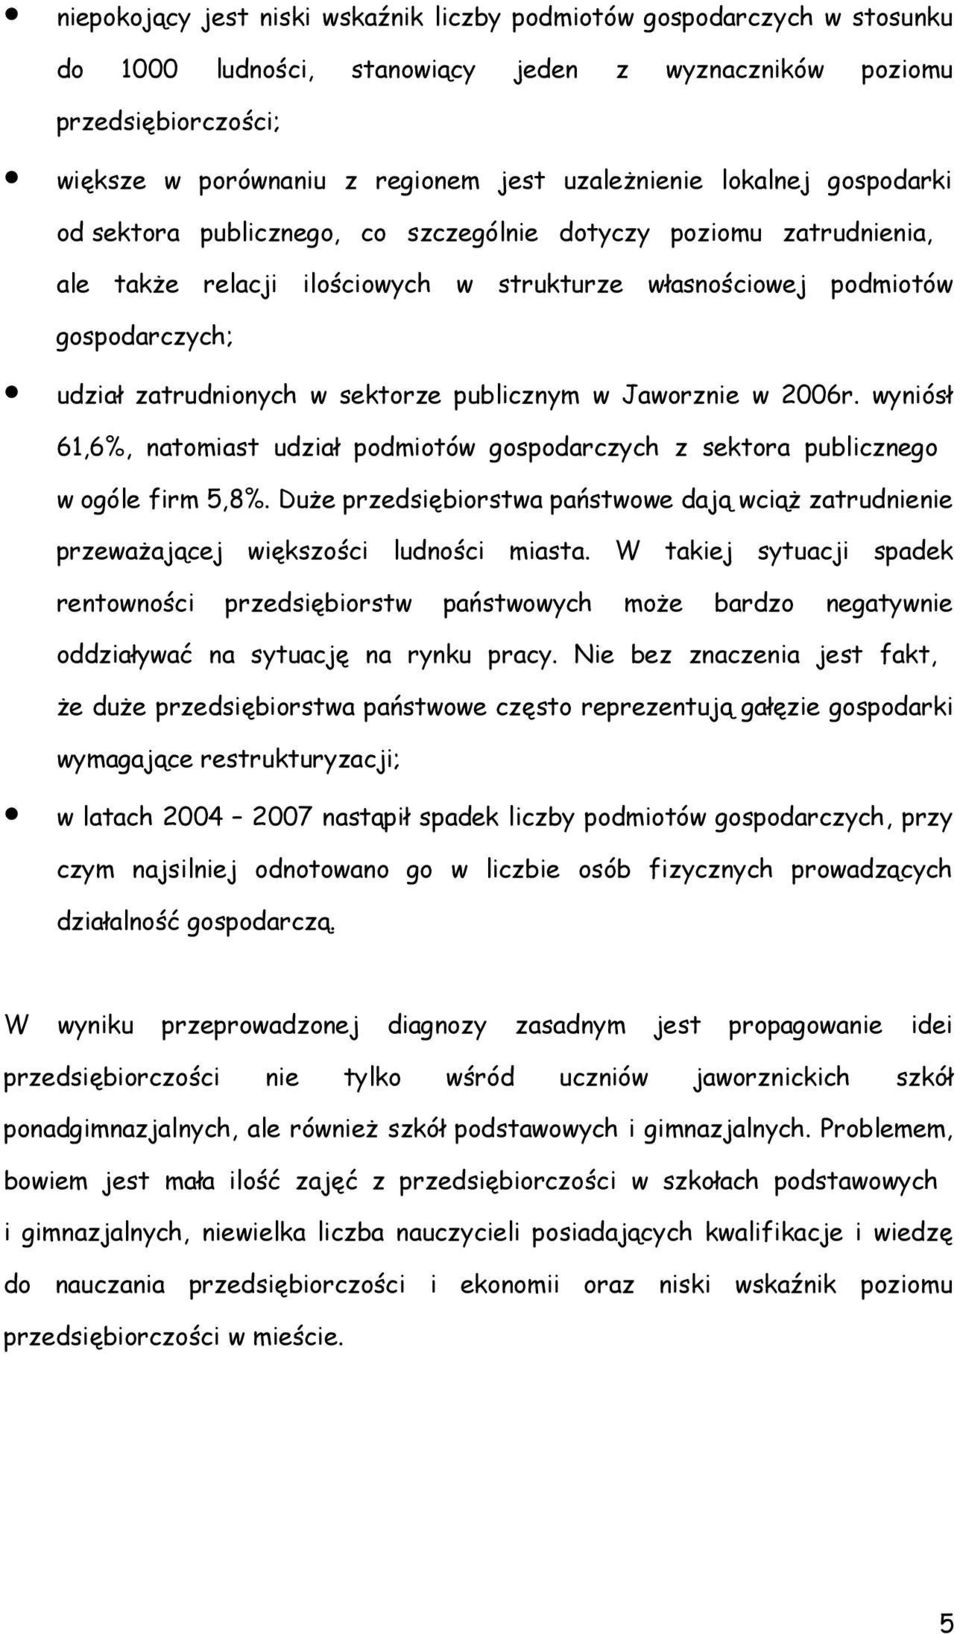 zatrudnionych w sektorze publicznym w Jaworznie w 2006r. wyniósł 61,6%, natomiast udział podmiotów gospodarczych z sektora publicznego w ogóle firm 5,8%.